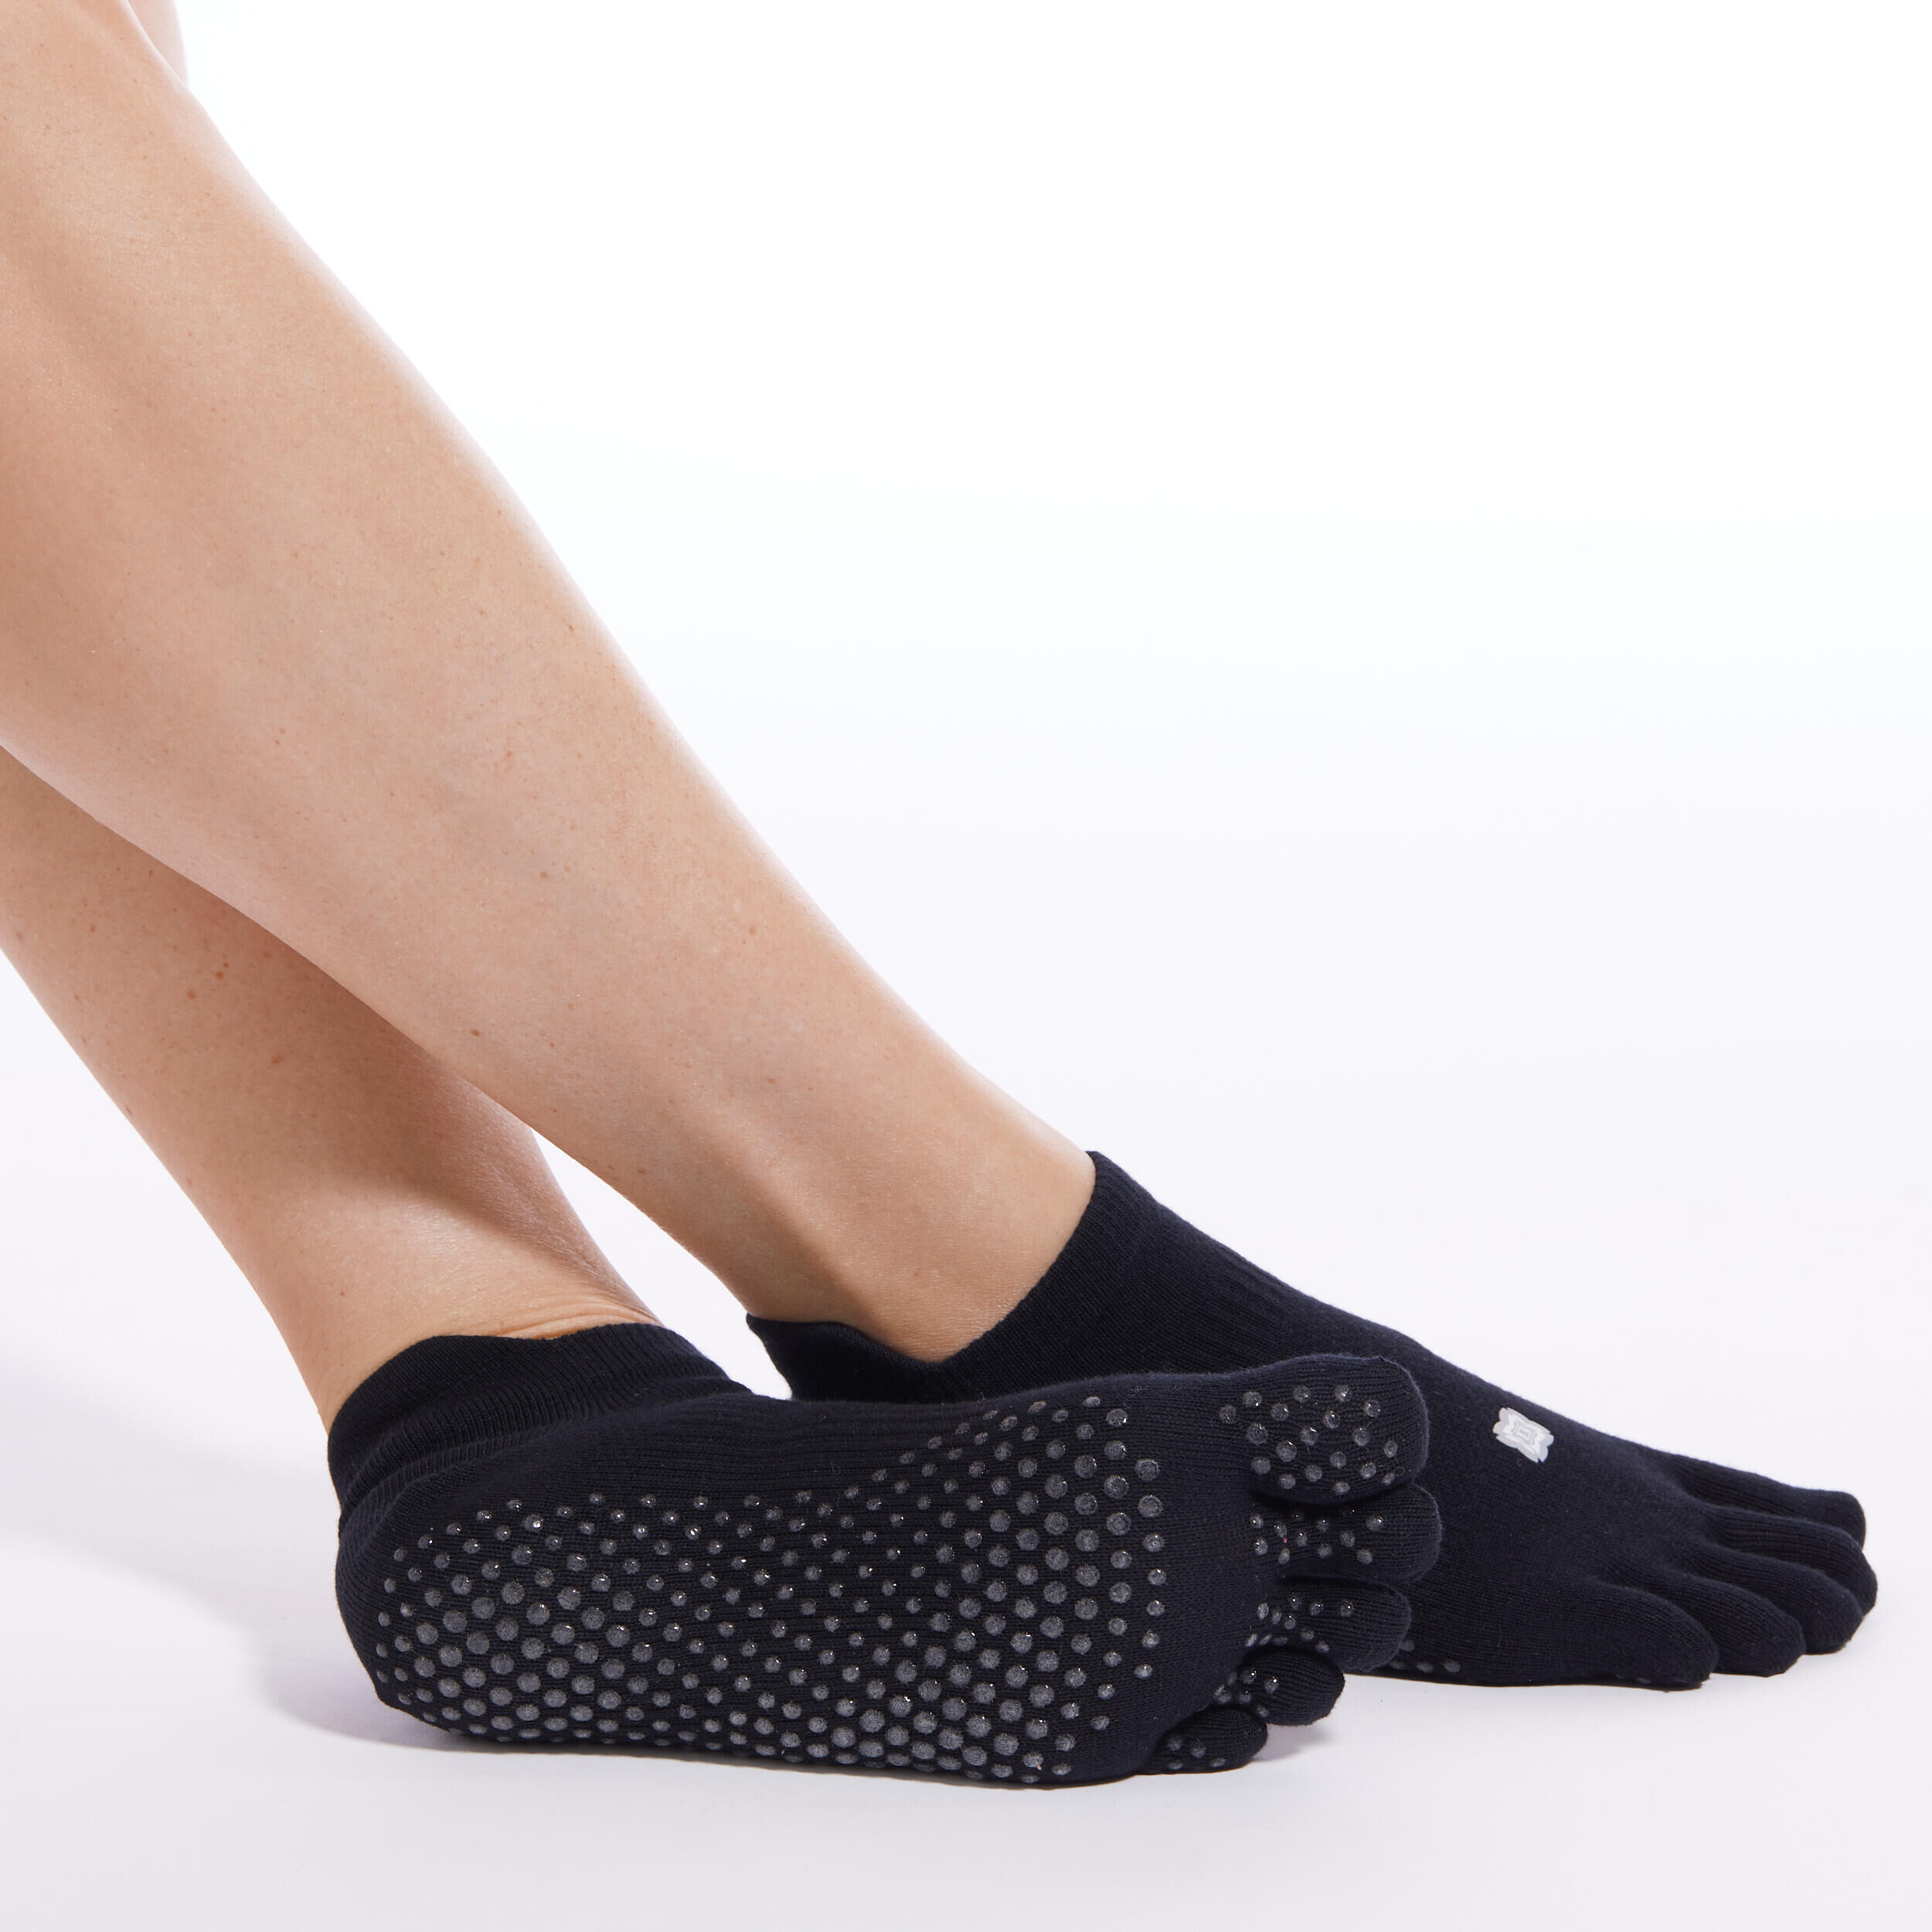 Pilates Socks, Grips Socks, Non-Slip